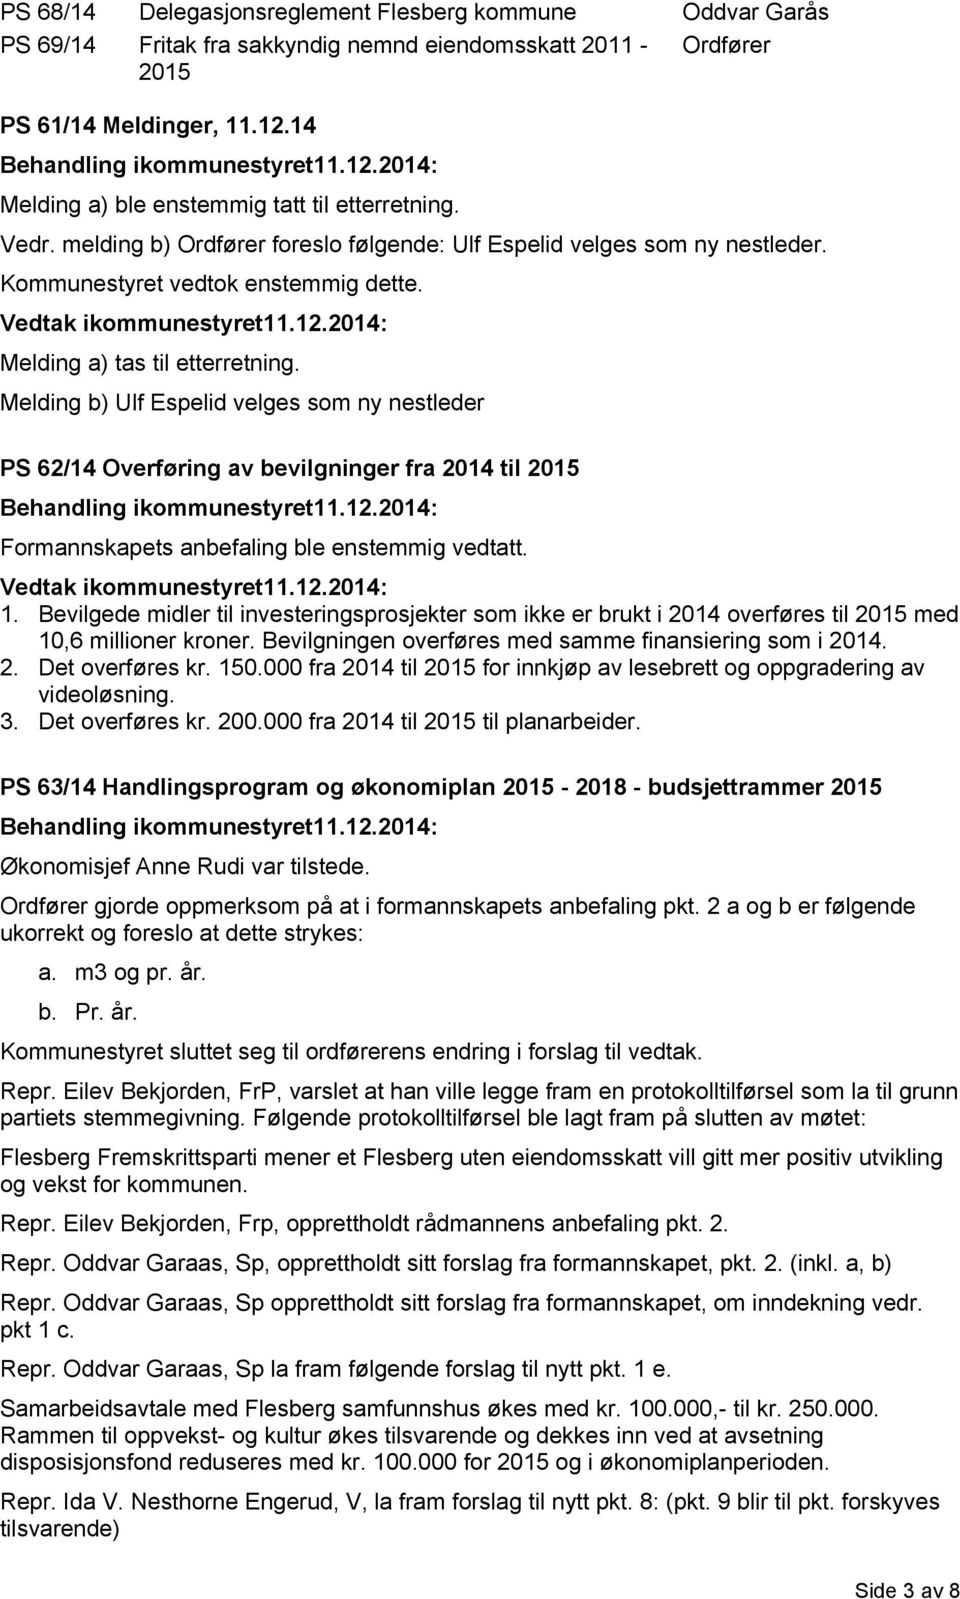 Melding a) tas til etterretning. Melding b) Ulf Espelid velges som ny nestleder PS 62/14 Overføring av bevilgninger fra 2014 til 2015 Formannskapets anbefaling ble enstemmig vedtatt. 1.